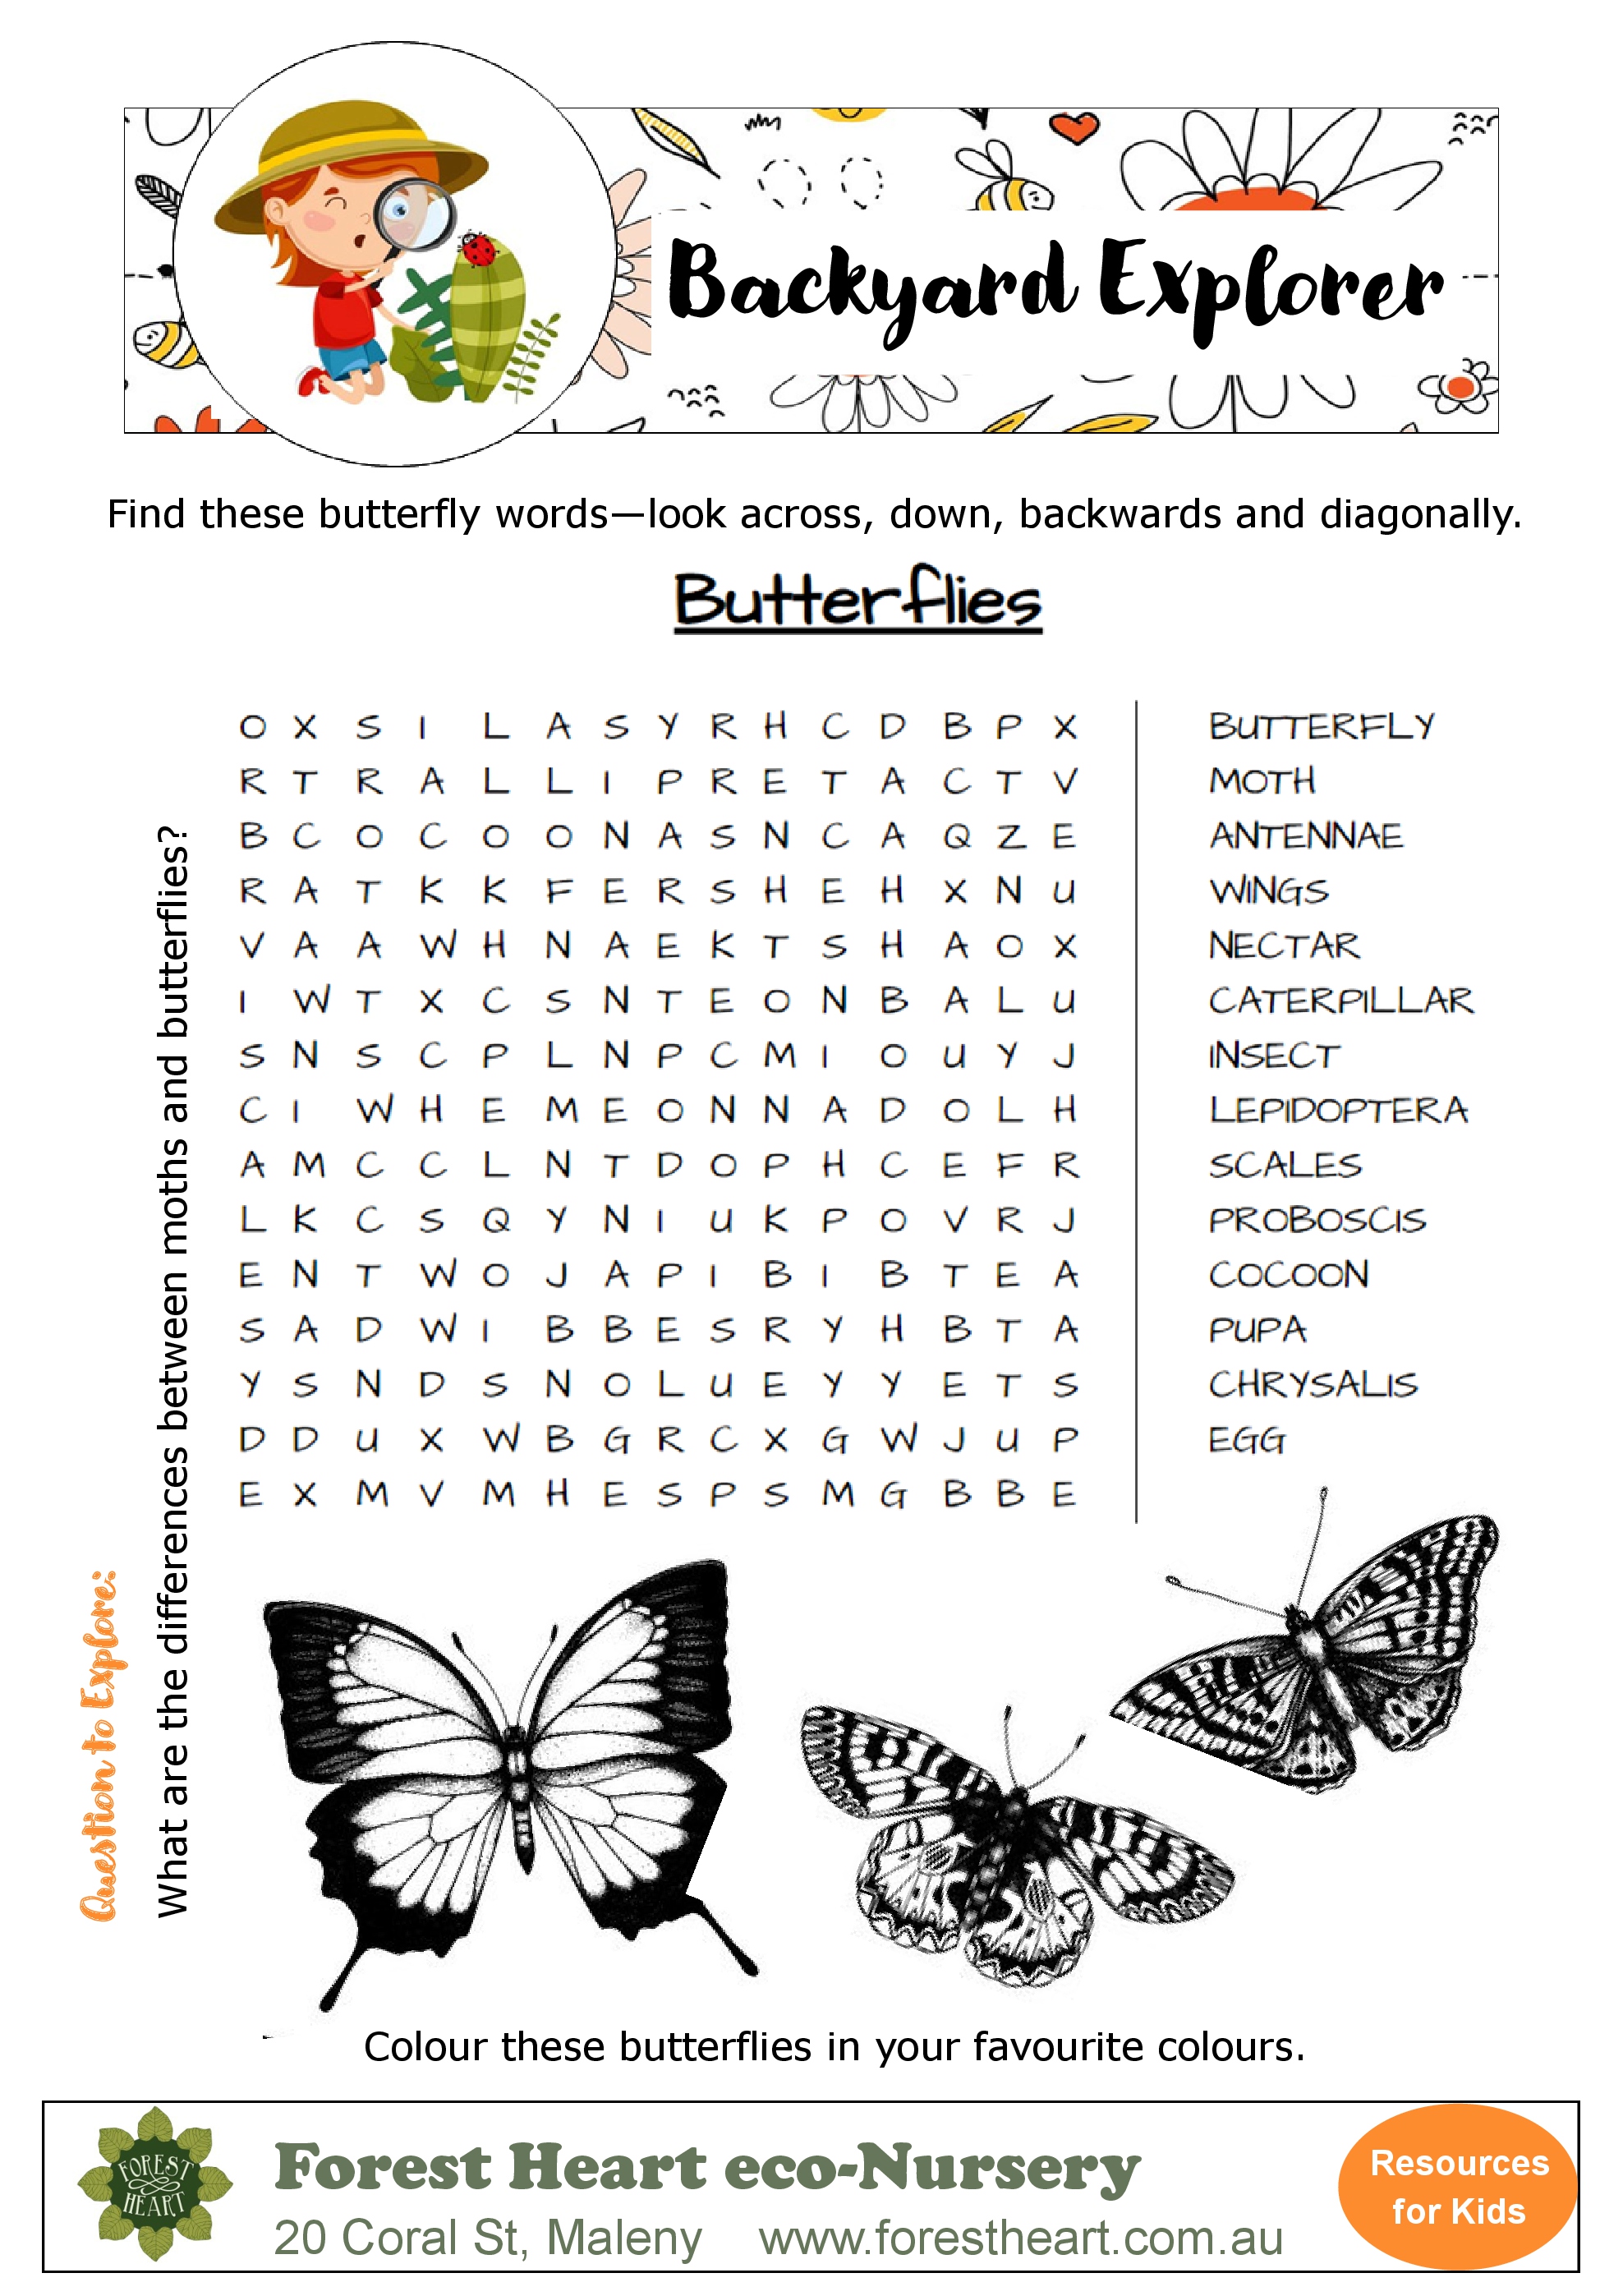 backyard-explorer-butterfly-wordsearch-forest-heart-eco-nursery